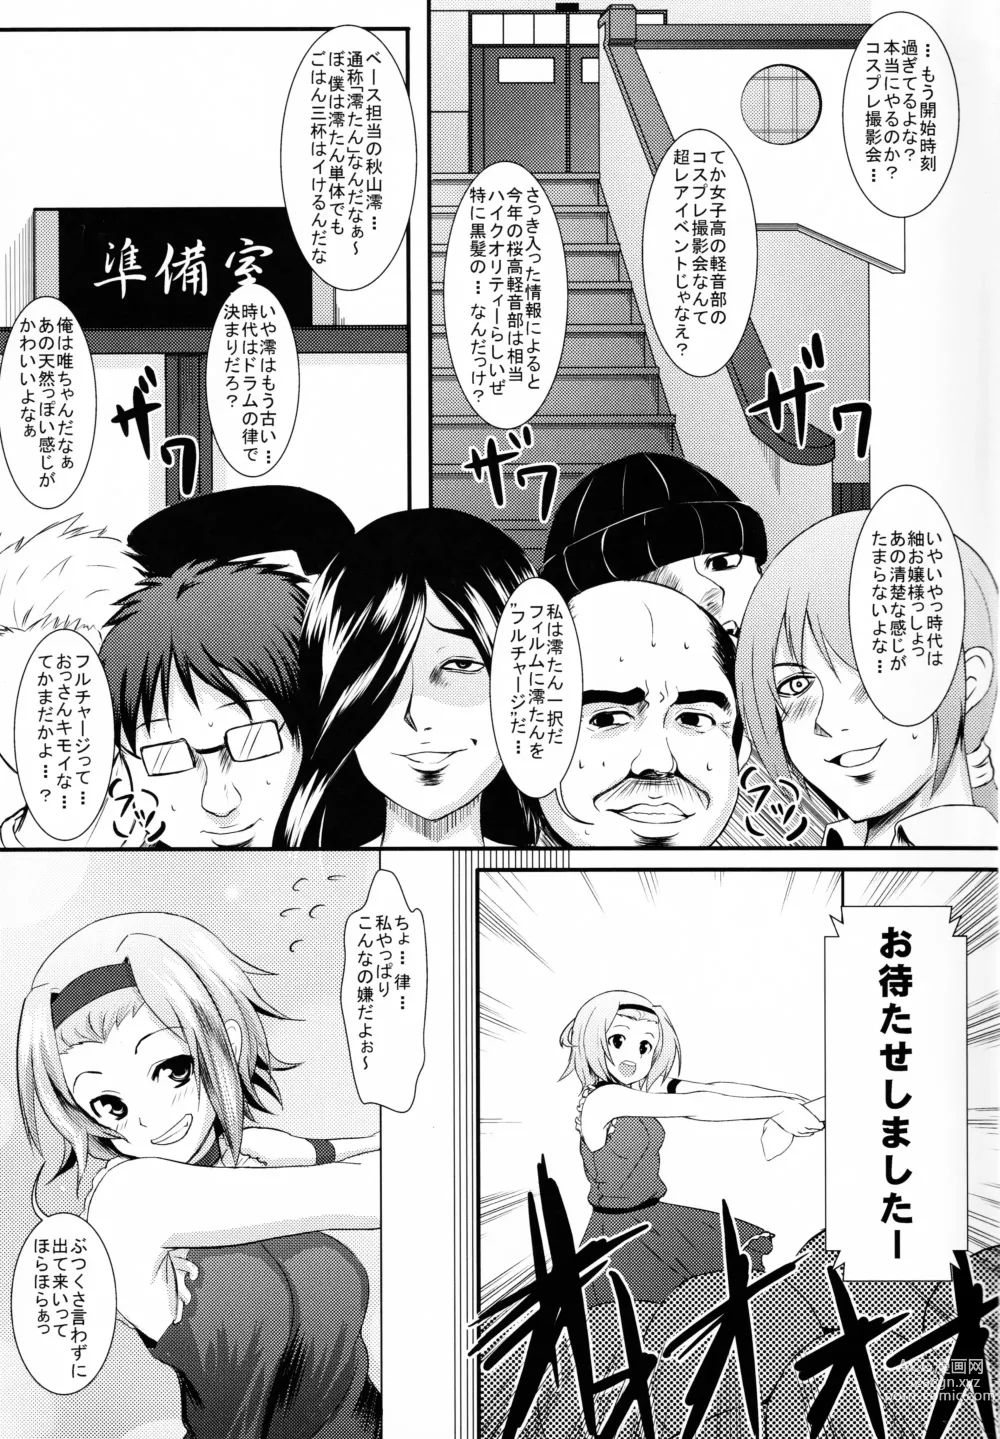 Page 2 of doujinshi KKK